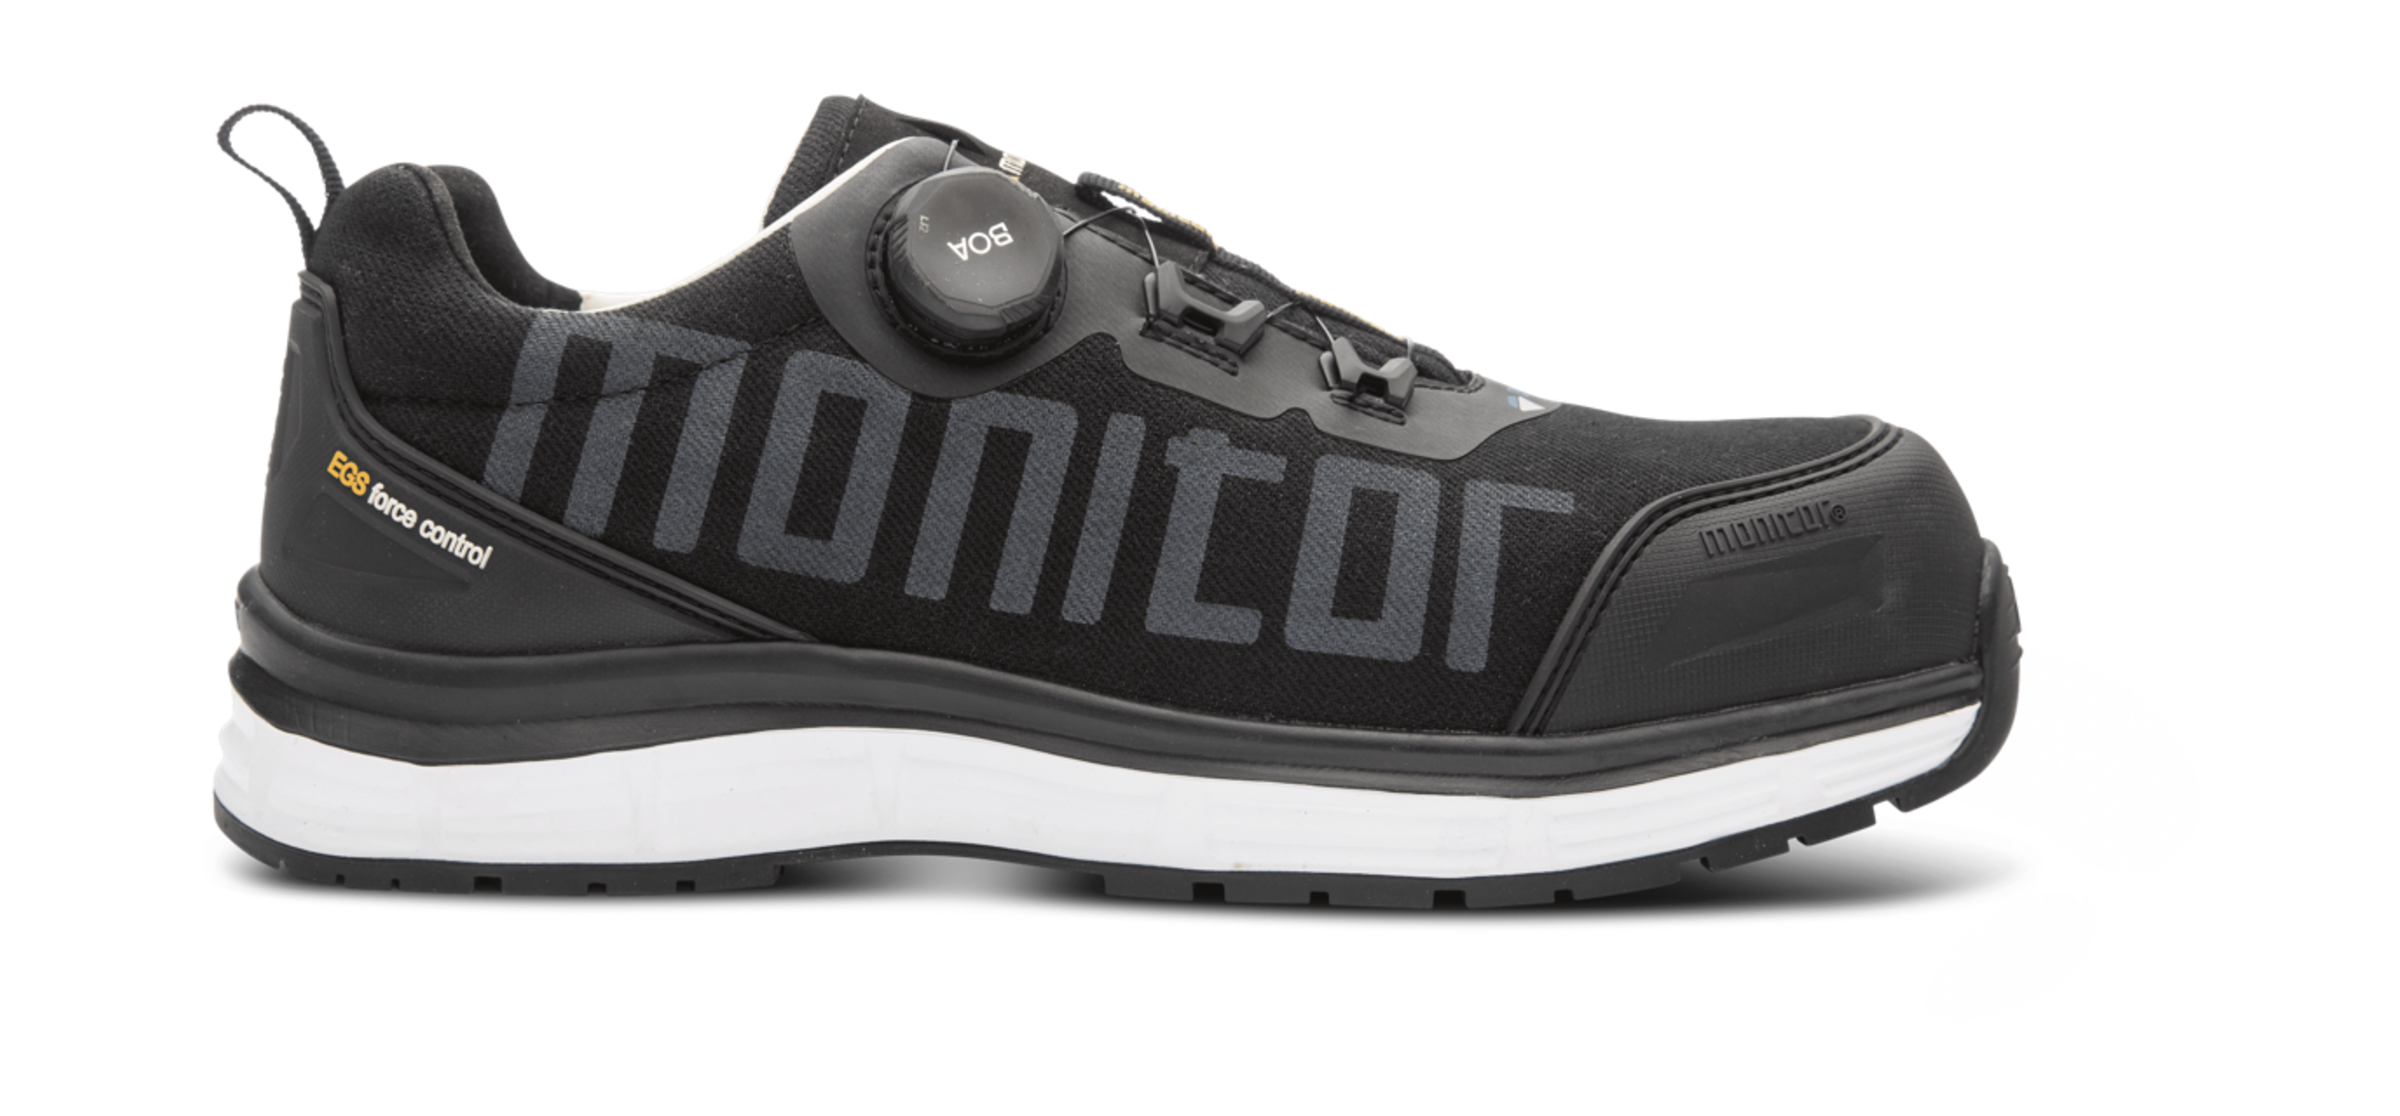 Monitor Iconic Safety Shoe